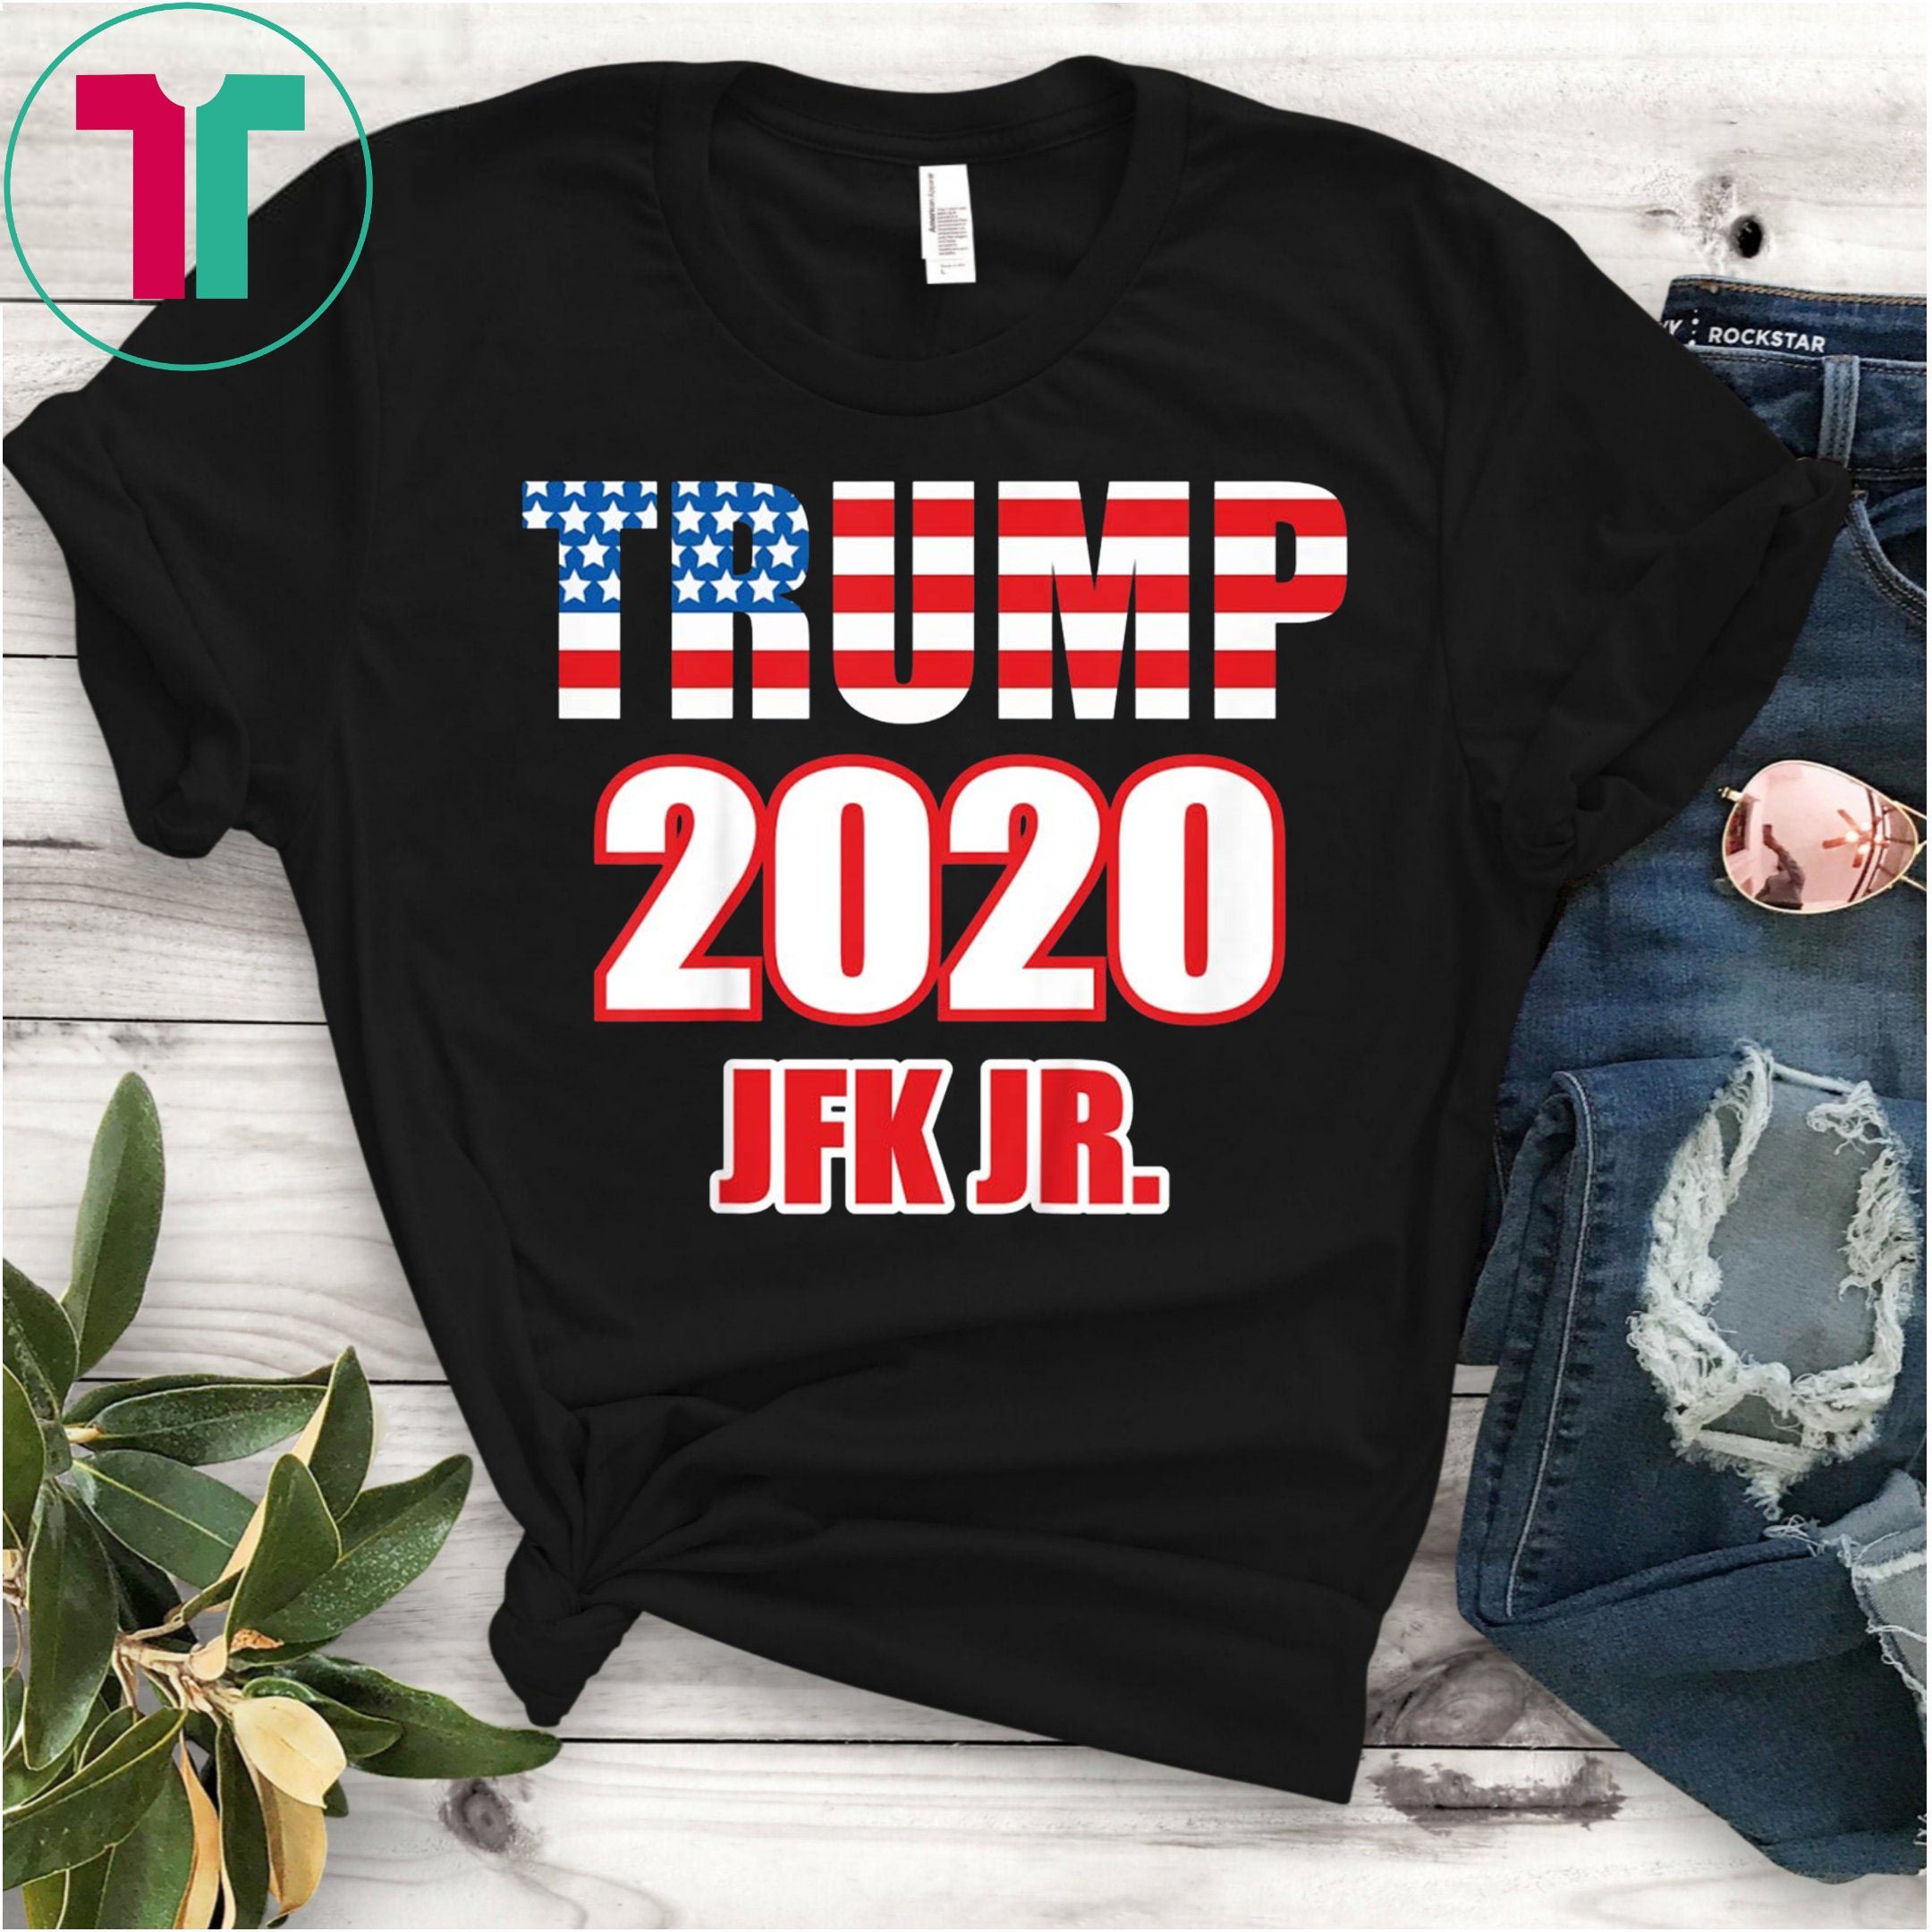 Trump 2020 JFK JR. Tee Shirt - OrderQuilt.com